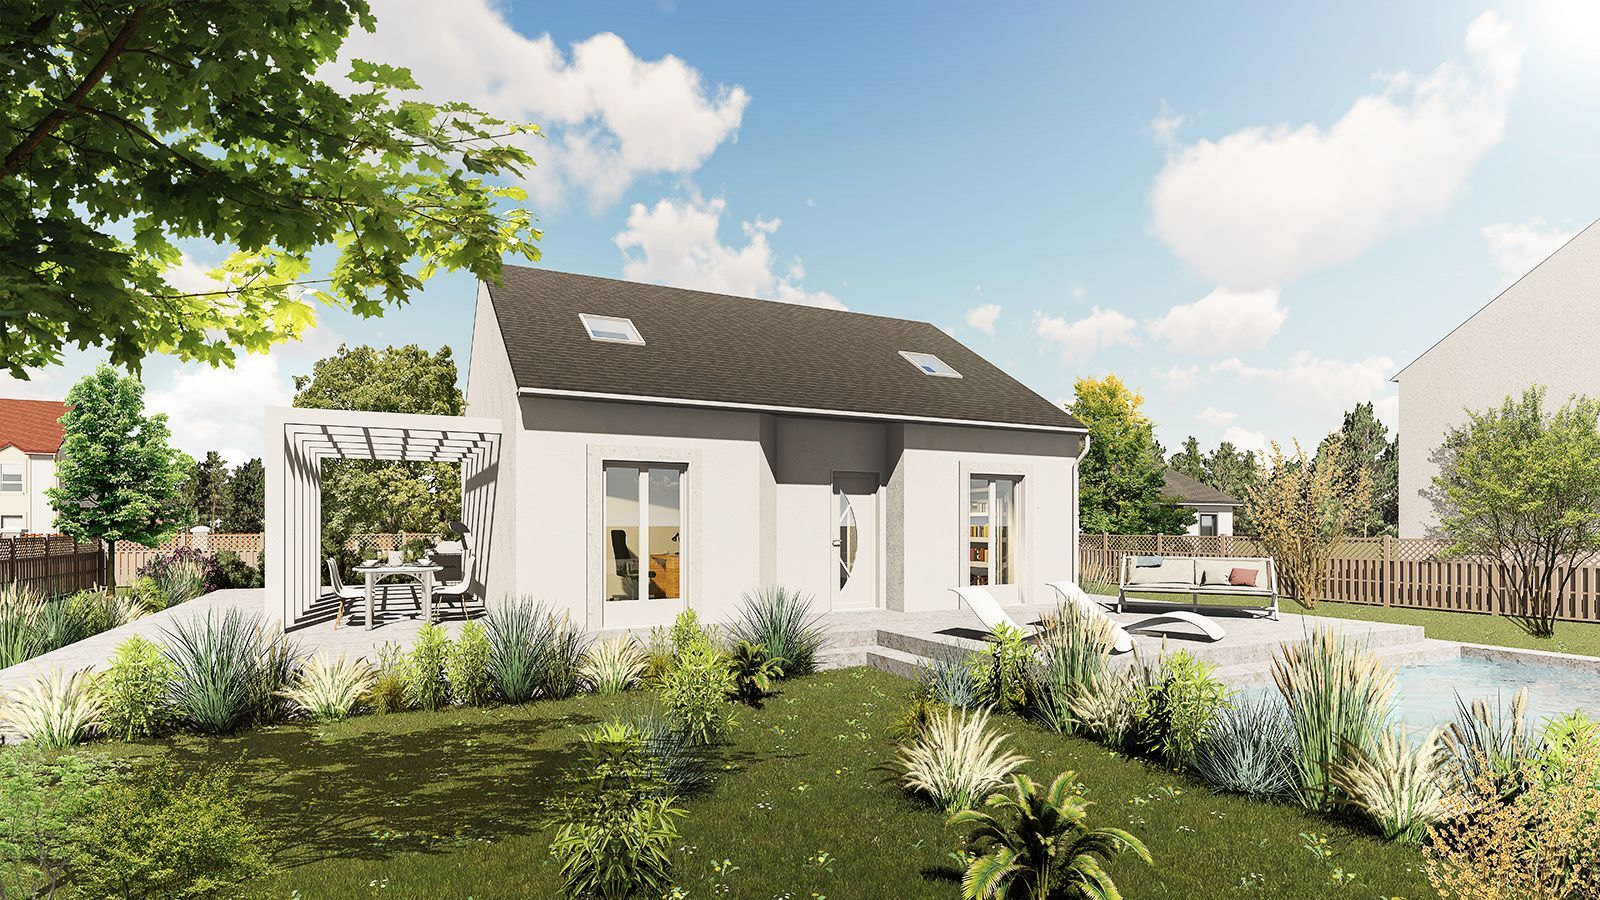 Vente Maison neuve 100 m² à Saint-Aubin-des-Bois 234 822 €